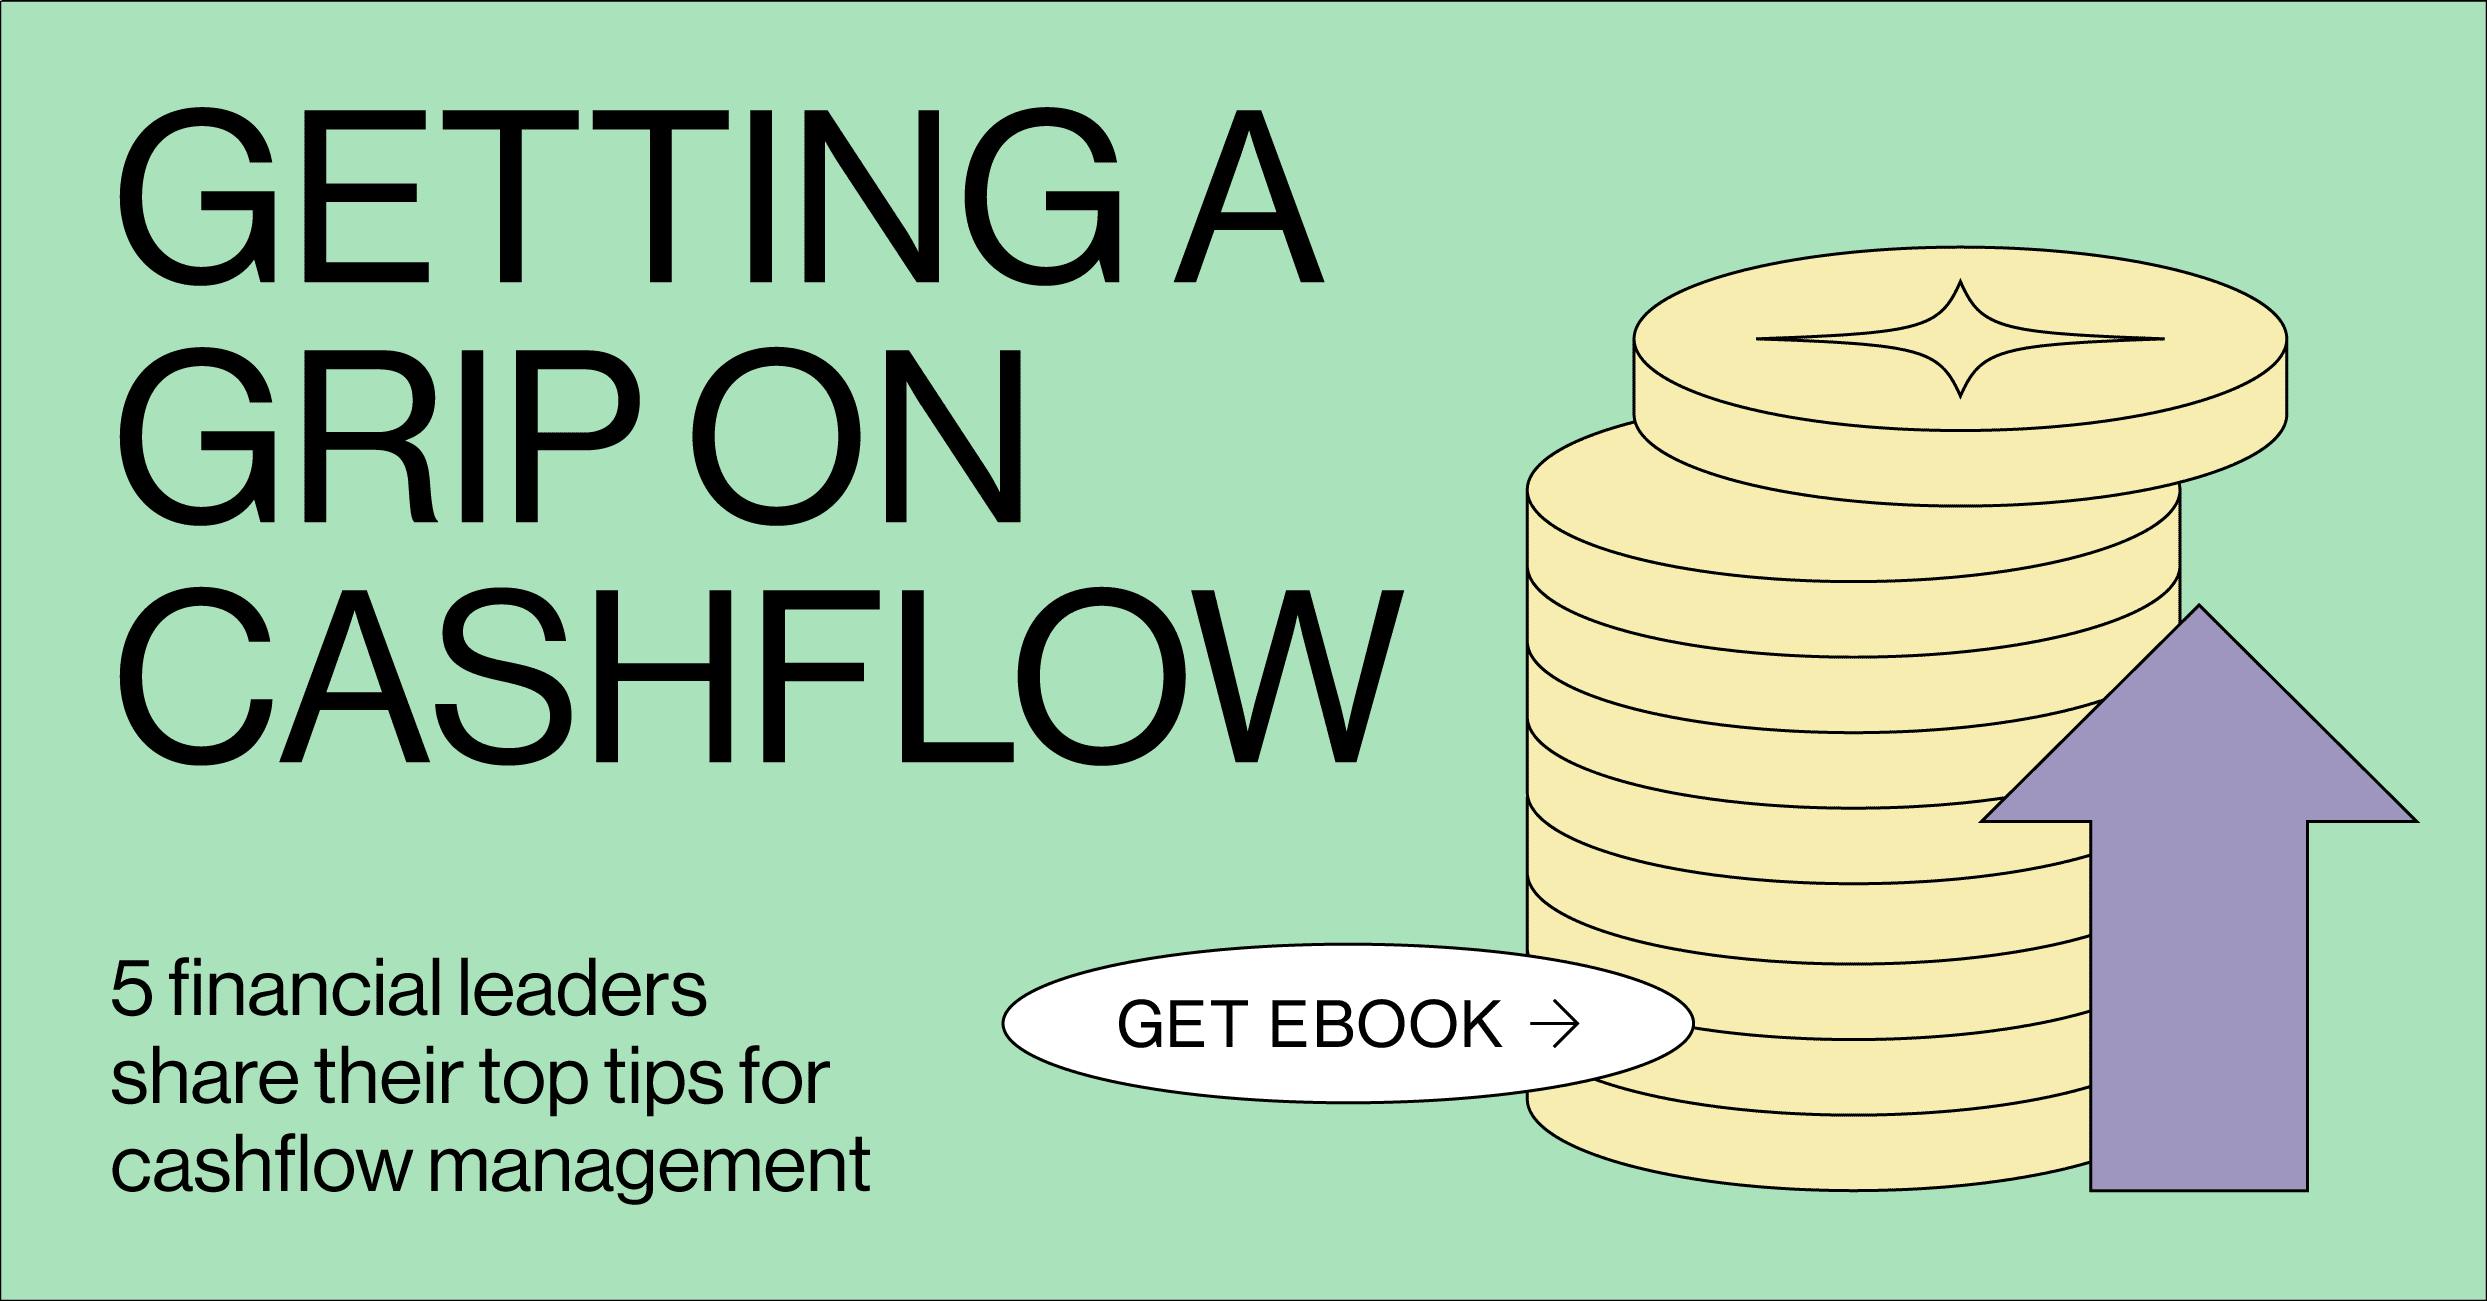 Download Getting a grip on cashflow eBook banner